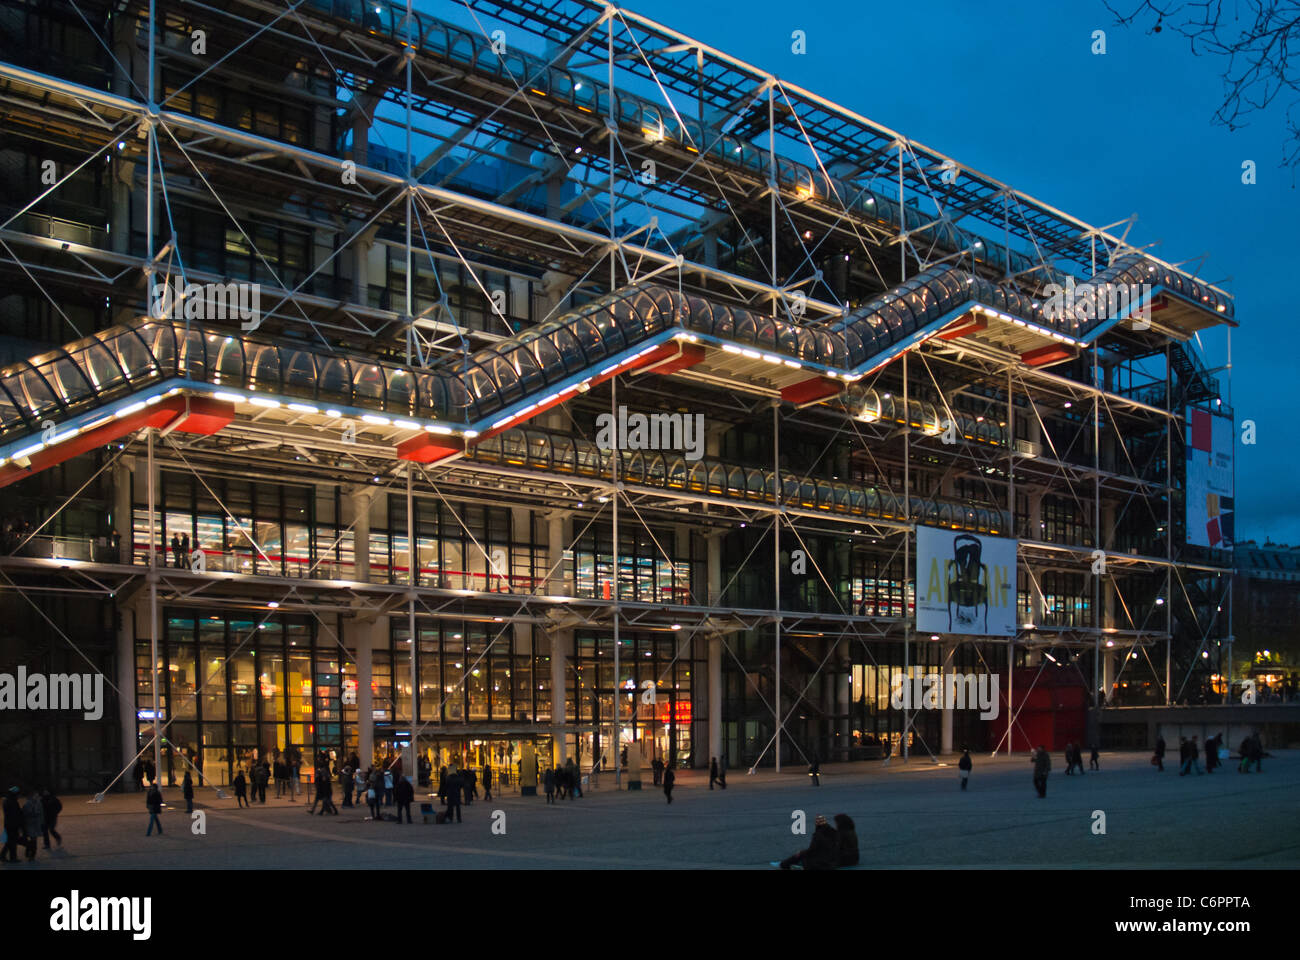 La suggestiva post moderna architettura del centro Pompidou, il Museo di Arte Moderna di Parigi illuminata di notte. Foto Stock